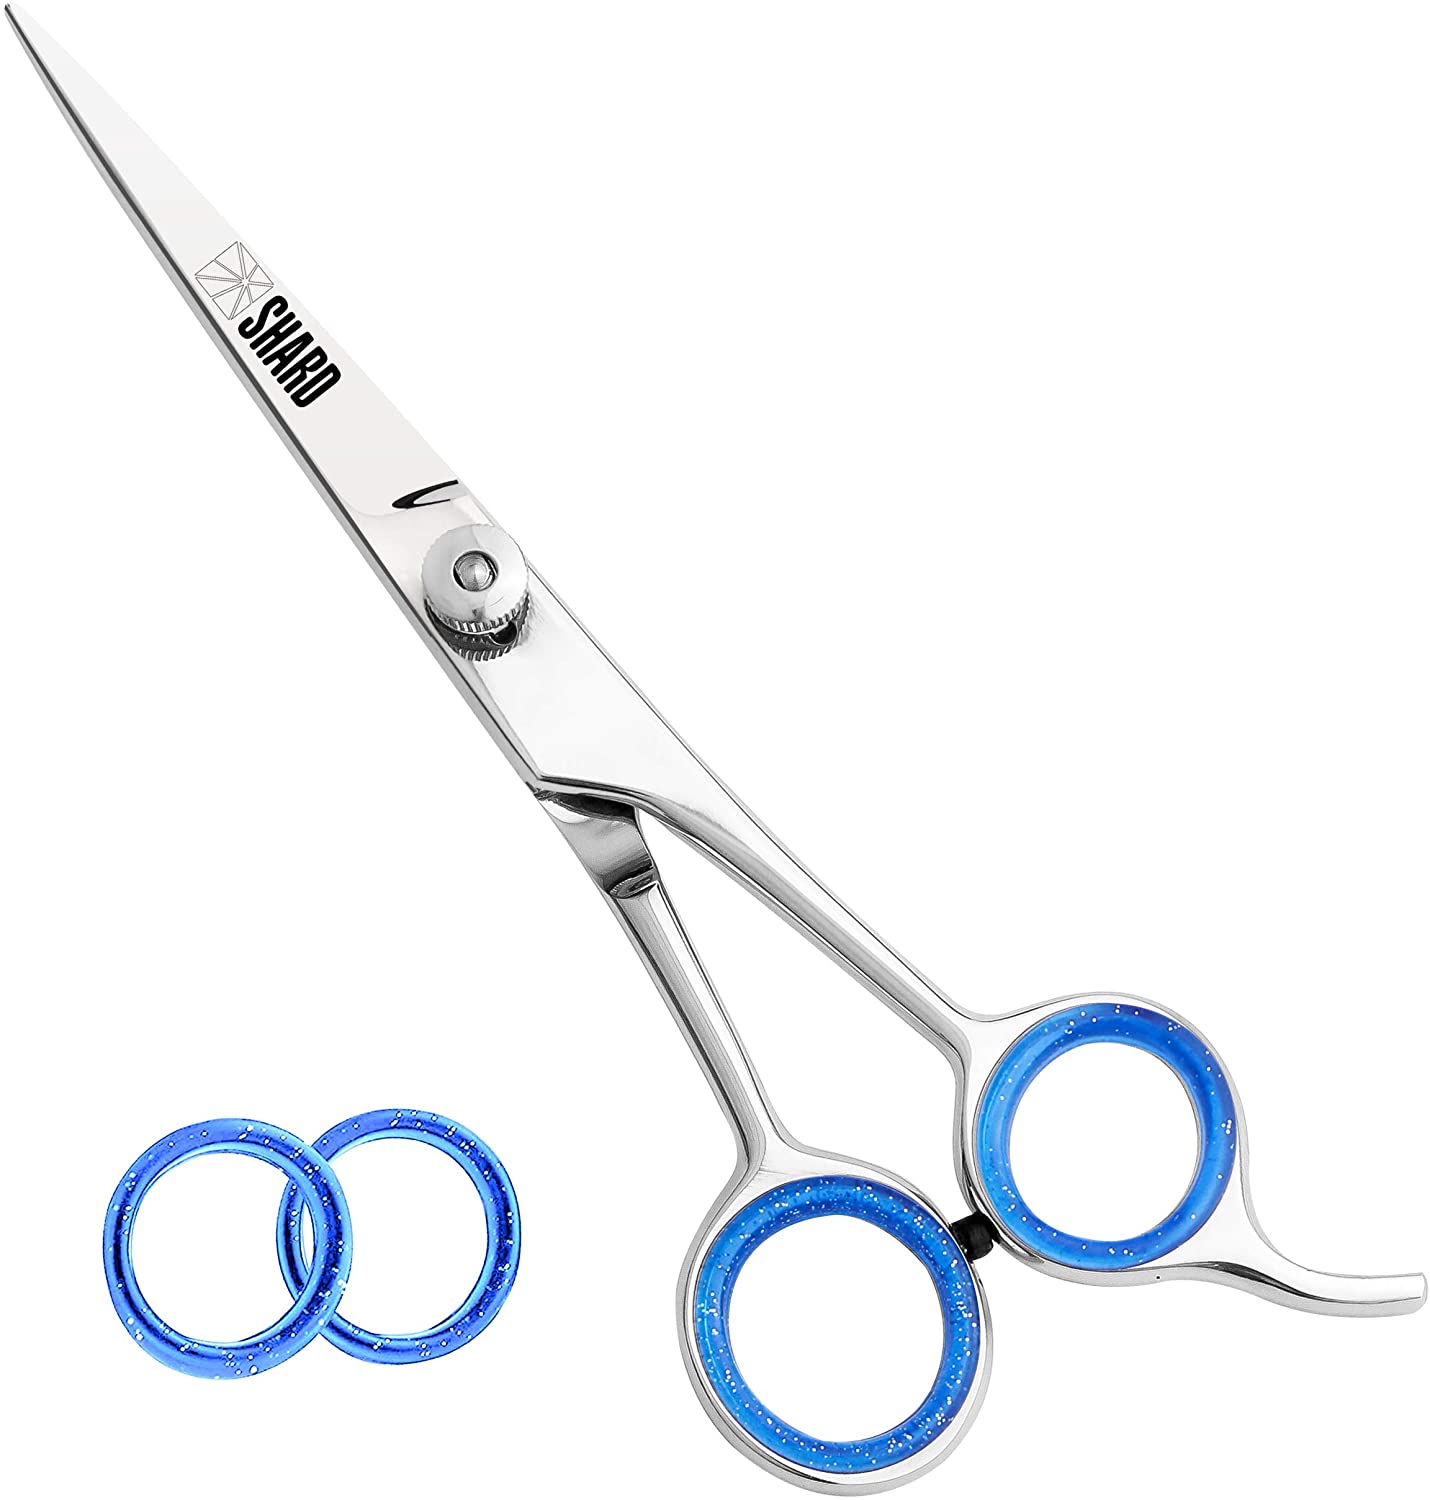 Professional Hair Cutting Scissors For Men Hair scissors Sharp Blades Hairdressing Barber Scissors